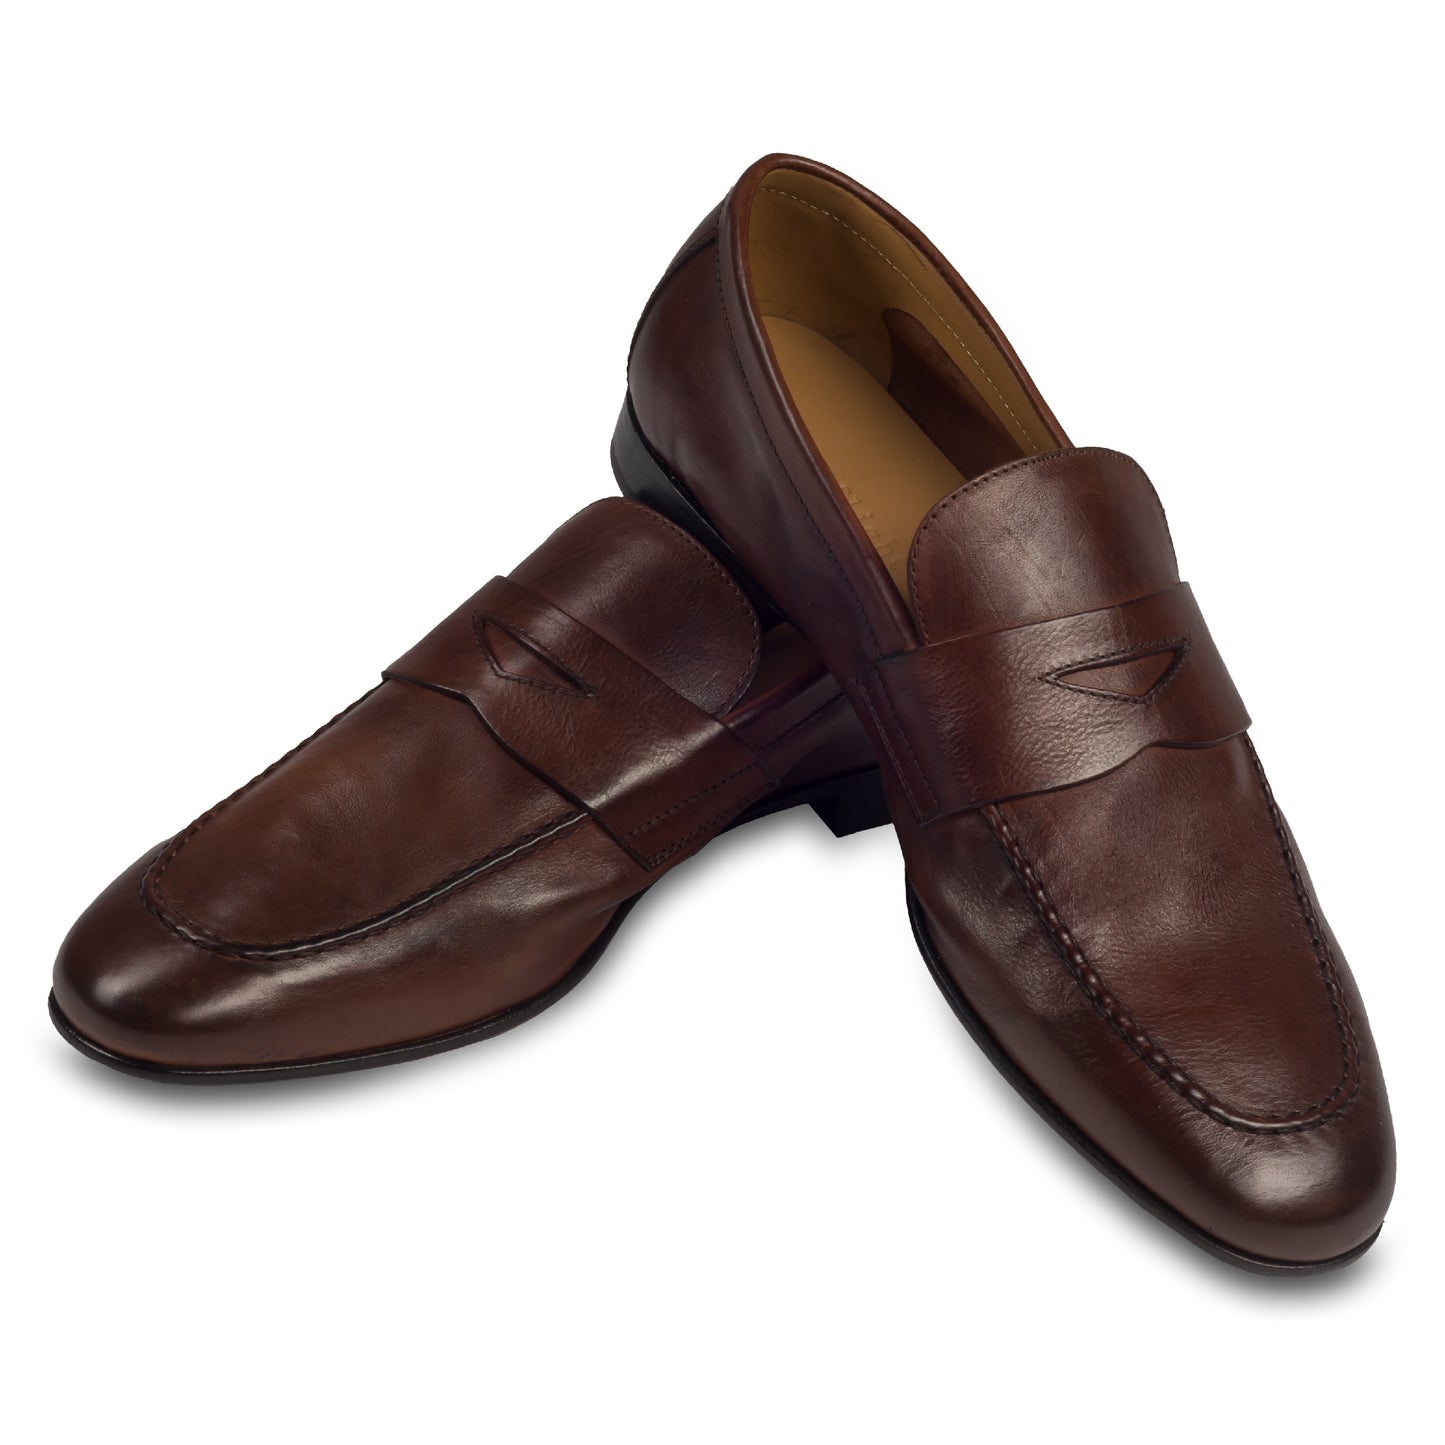 Triverflight - Italienische Herren Loafer in dunkelbraun, Sacchetto-Machart. Aus Kalbsleder handgefertigt. Paarweise Ansicht Schuhe überkreuzt aufgestellt.